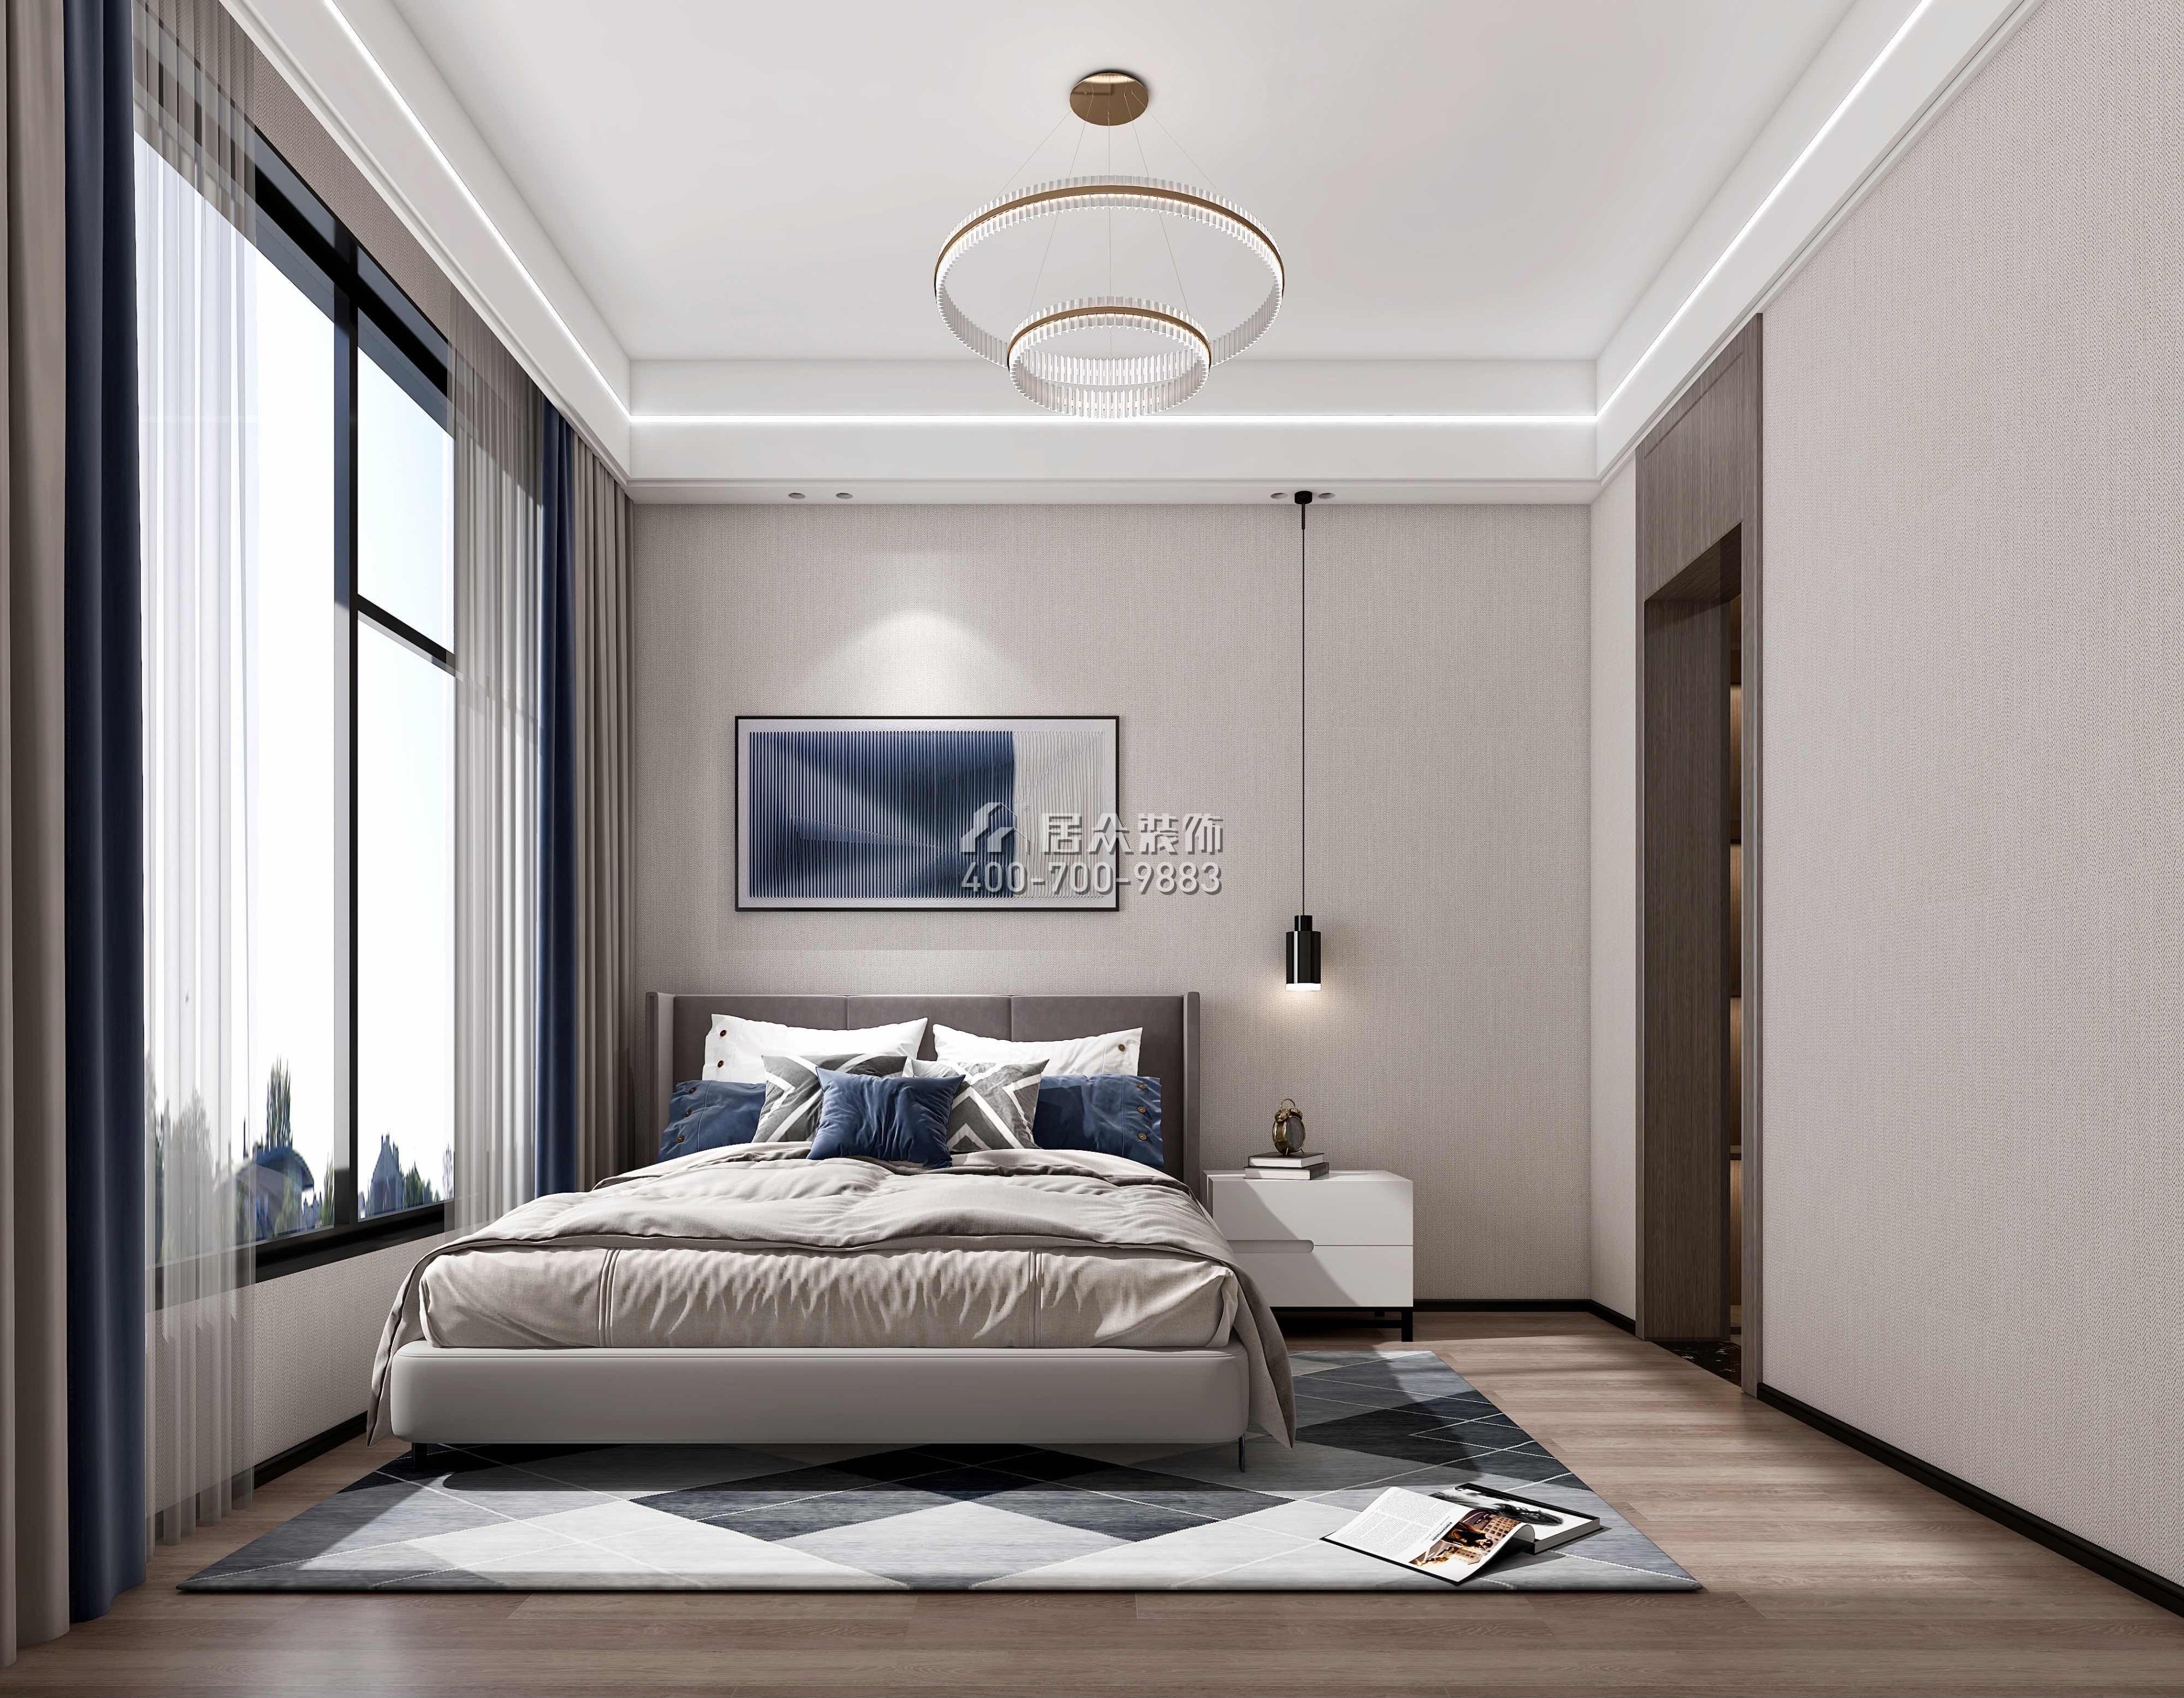 尚东紫御598平方米现代简约风格别墅户型卧室装修效果图